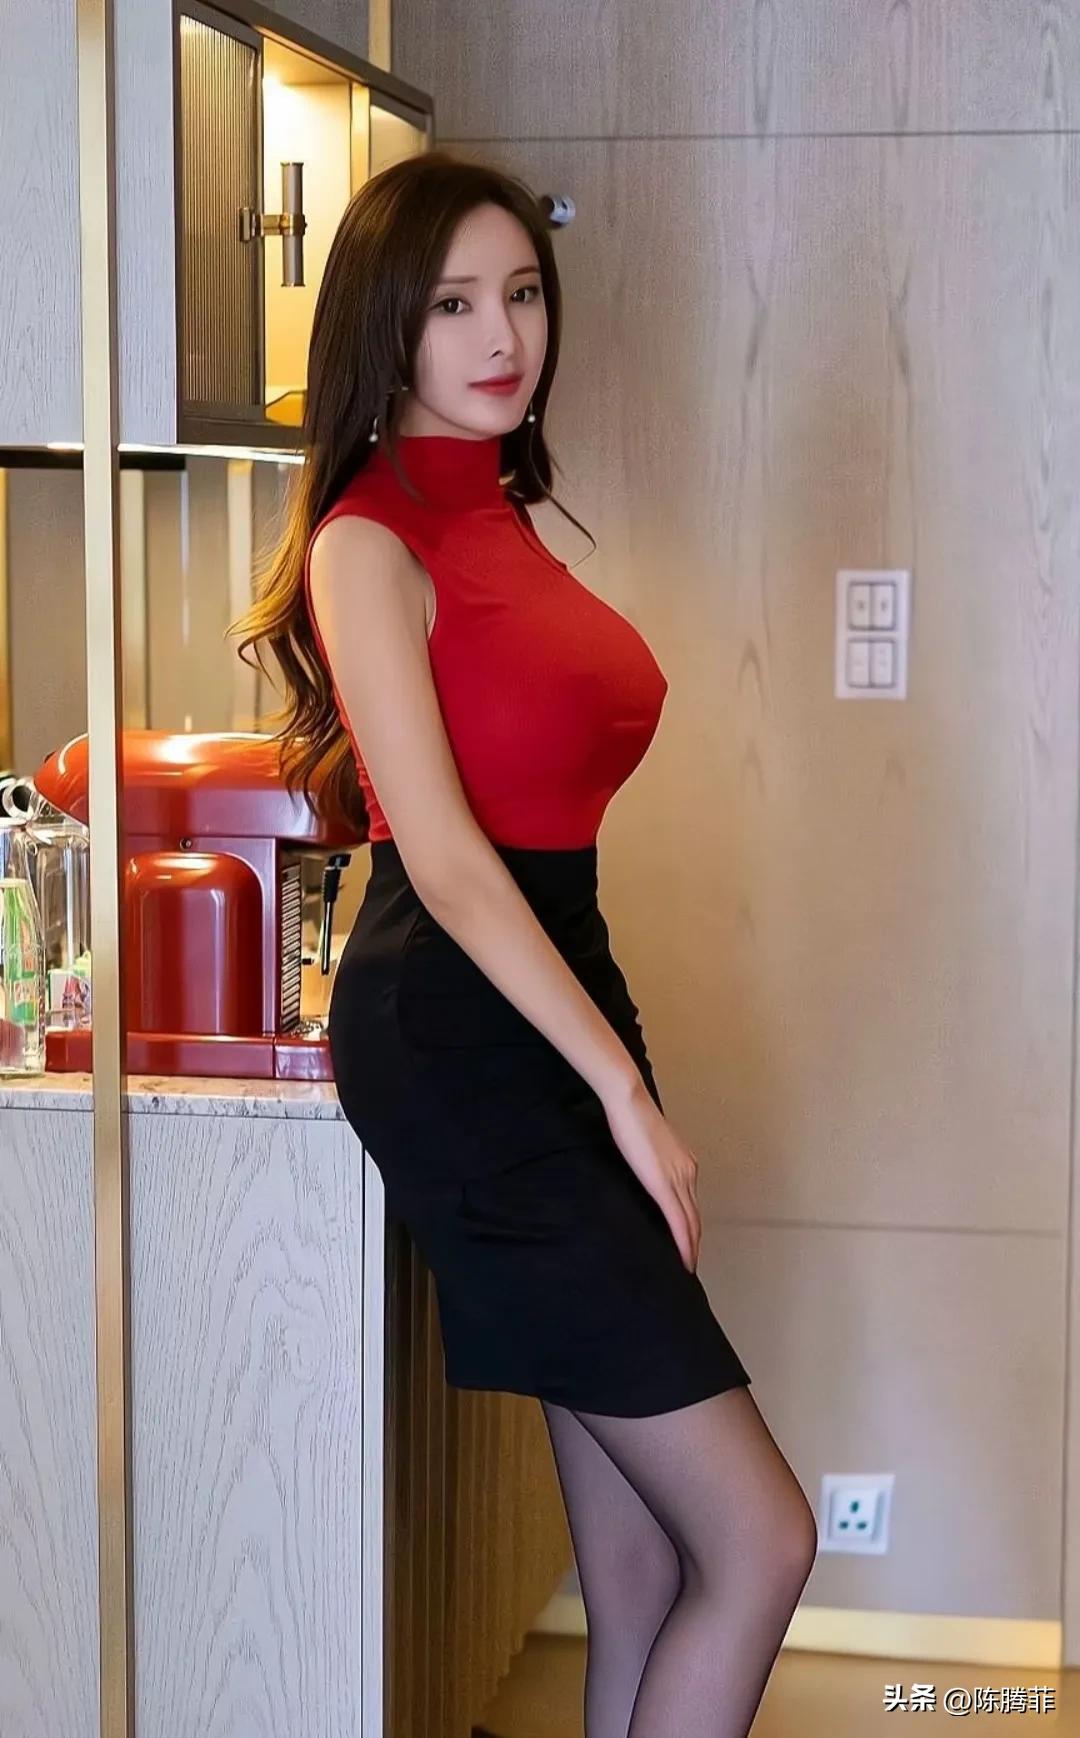 Zhou Yanxi S Sexy Photo Her Body Is Unforgettable Inews